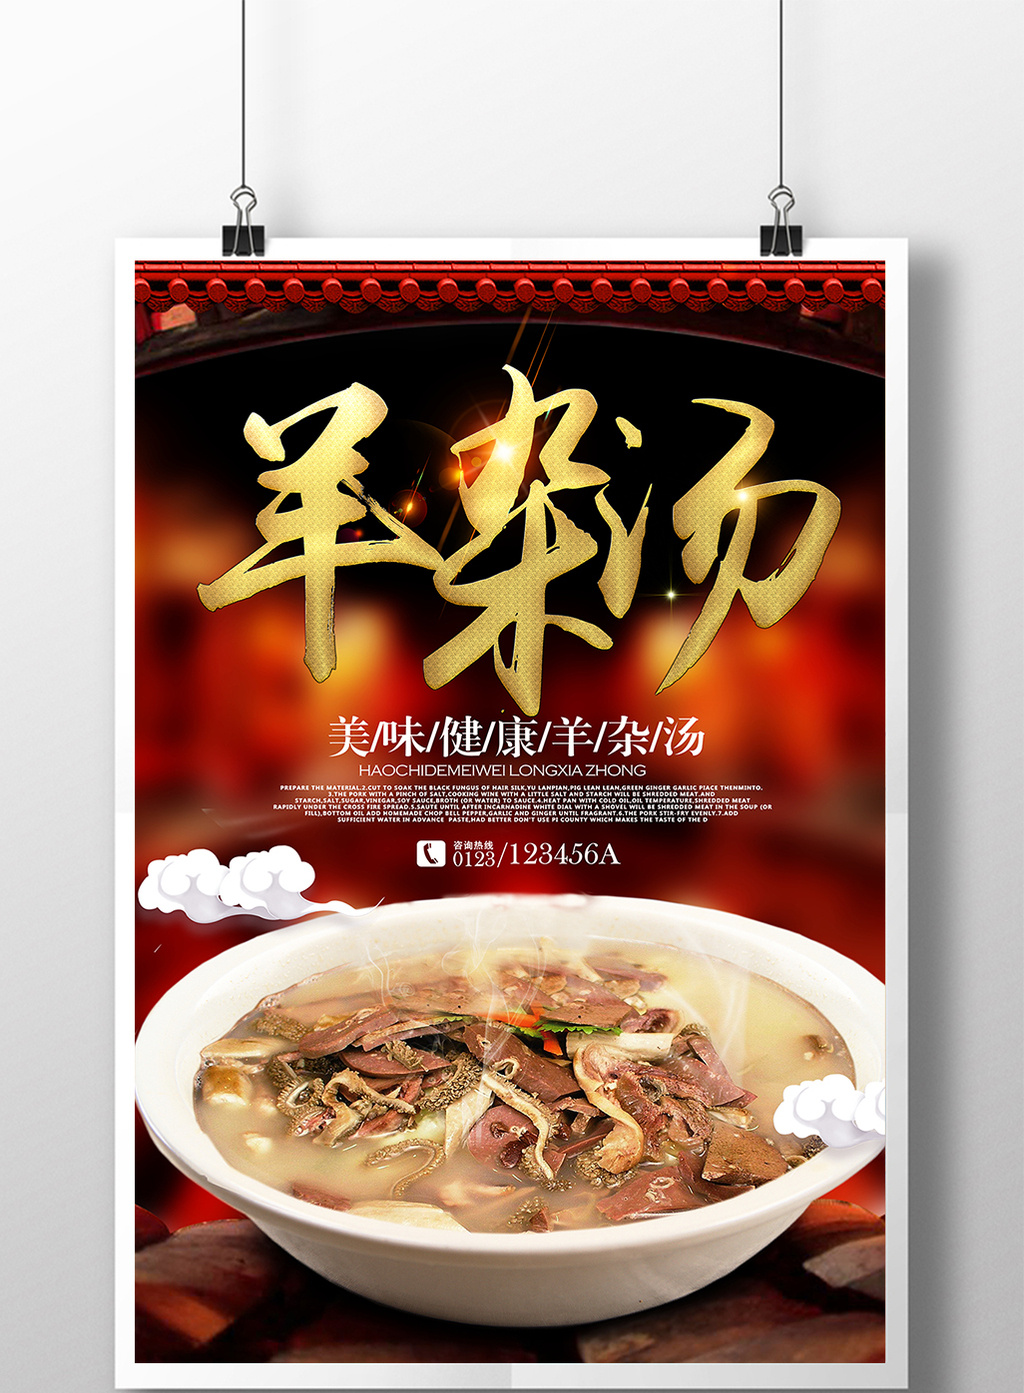 羊杂汤美食餐饮海报设计1高清psd图片设计素材免费